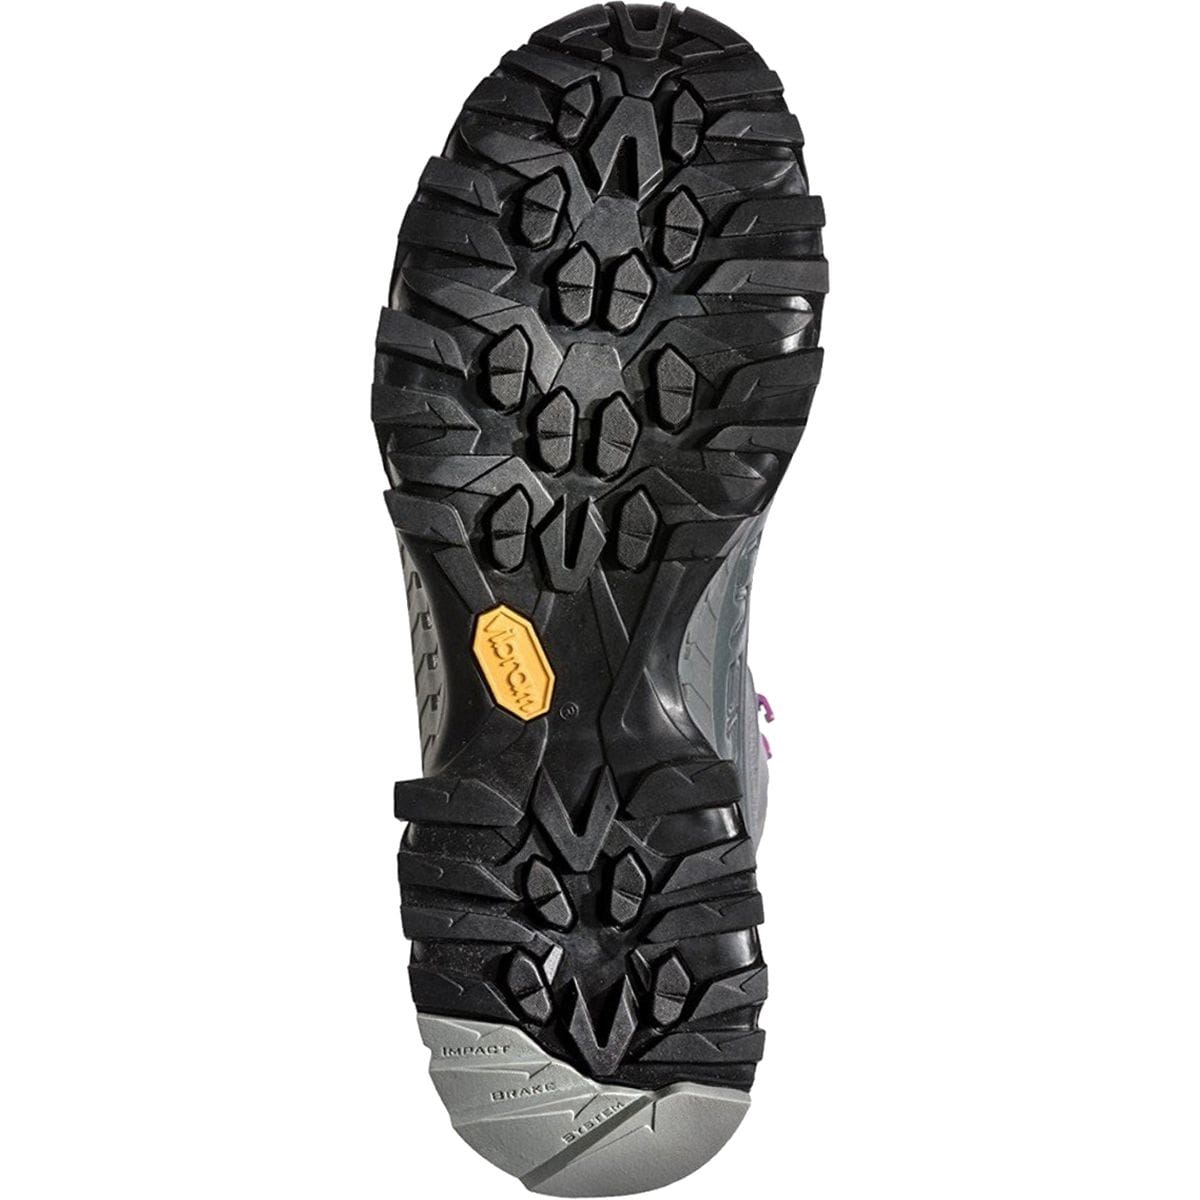 La Sportiva Spire GTX Hiking Shoe - Women's - Footwear